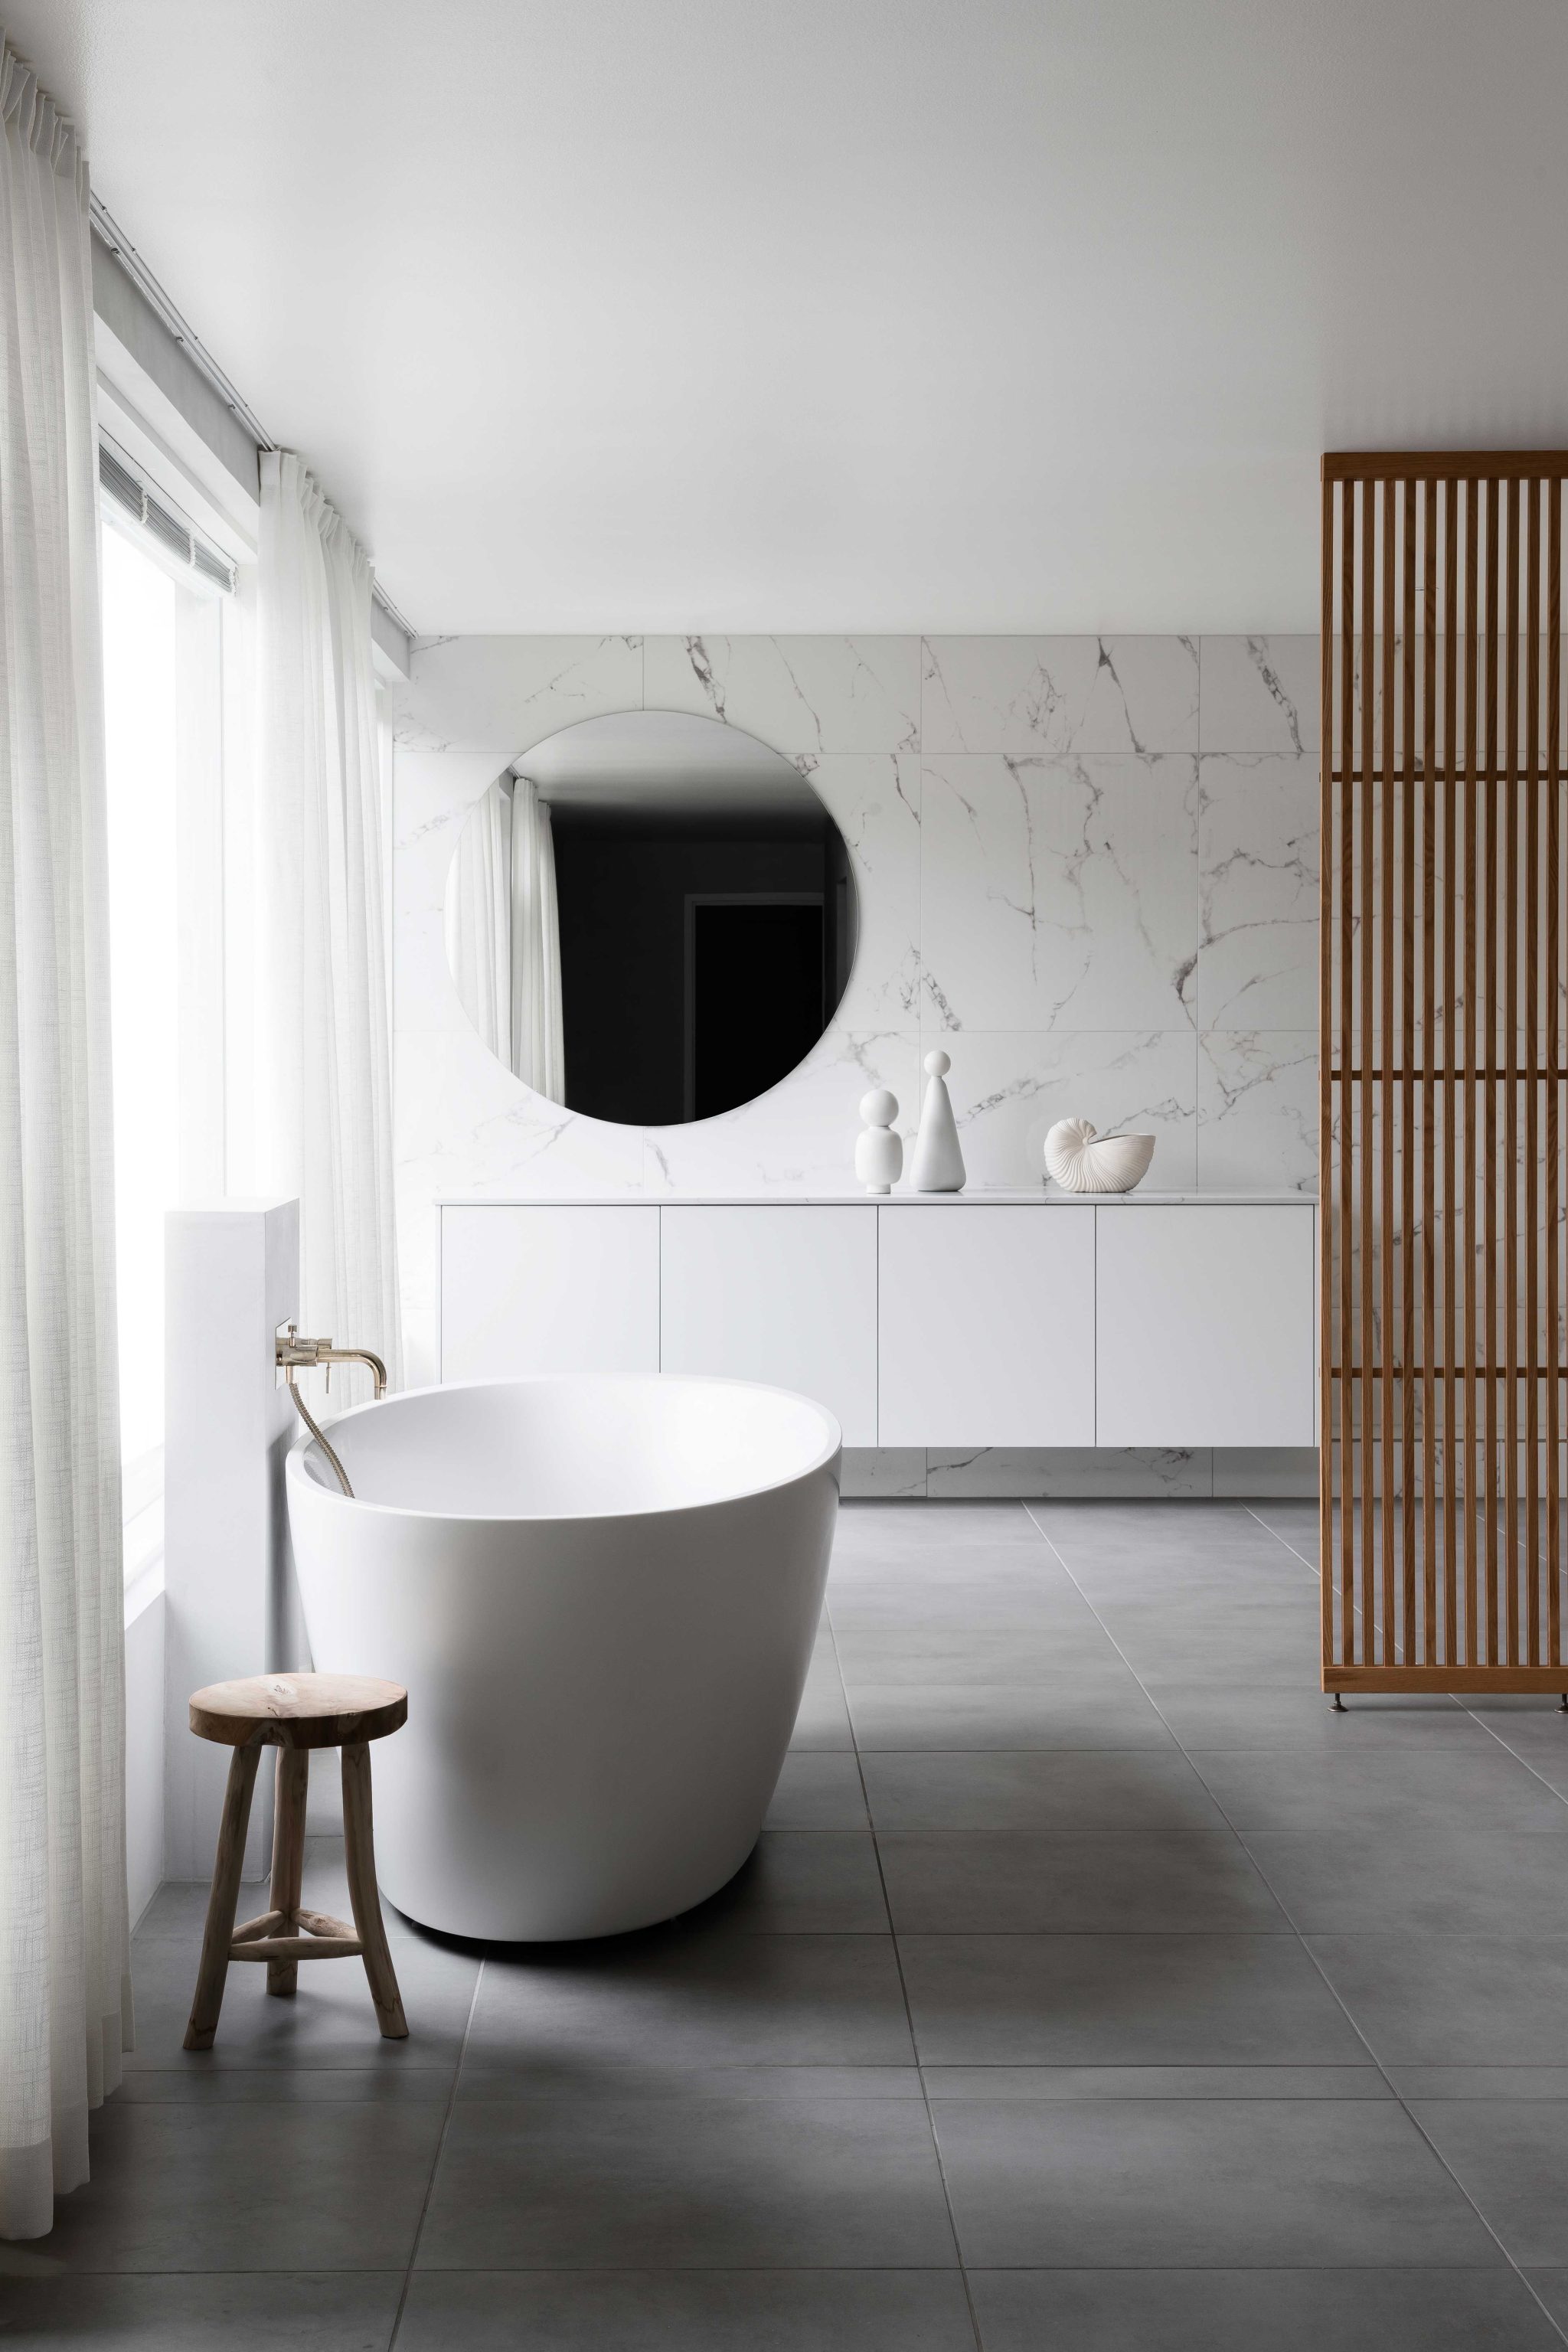 Blaun ja Laura SeppÃ¤sen suunnittelema skandinaavinen spa kylpyhuone marmorikuvioidulla laatalla ja messinkisillÃ¤ yksityiskohdilla